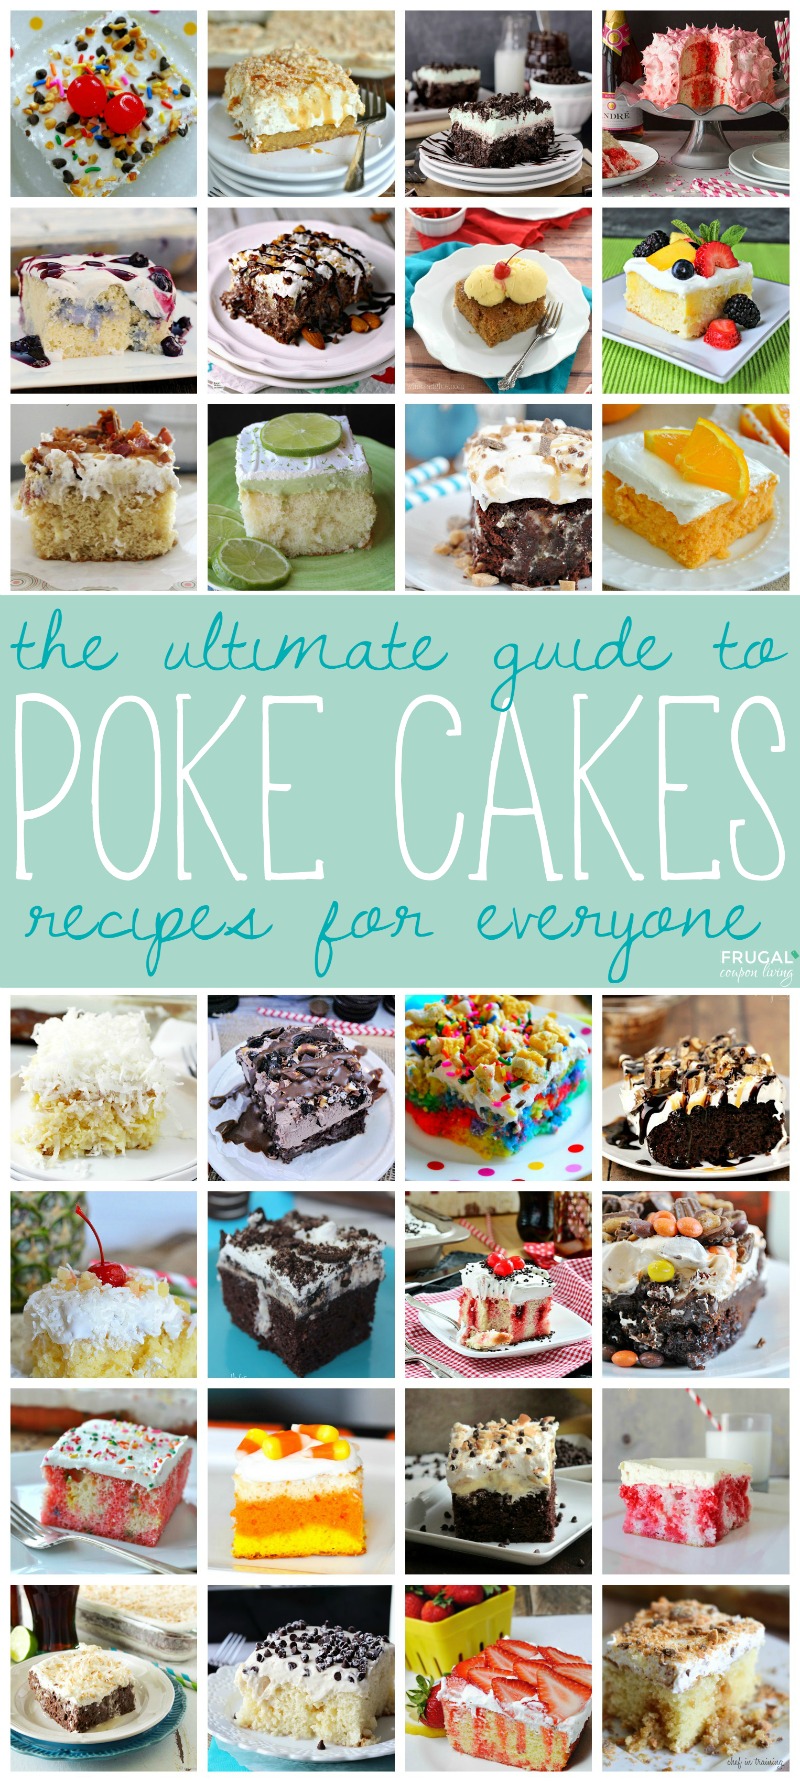 poke-cake-collage-edited